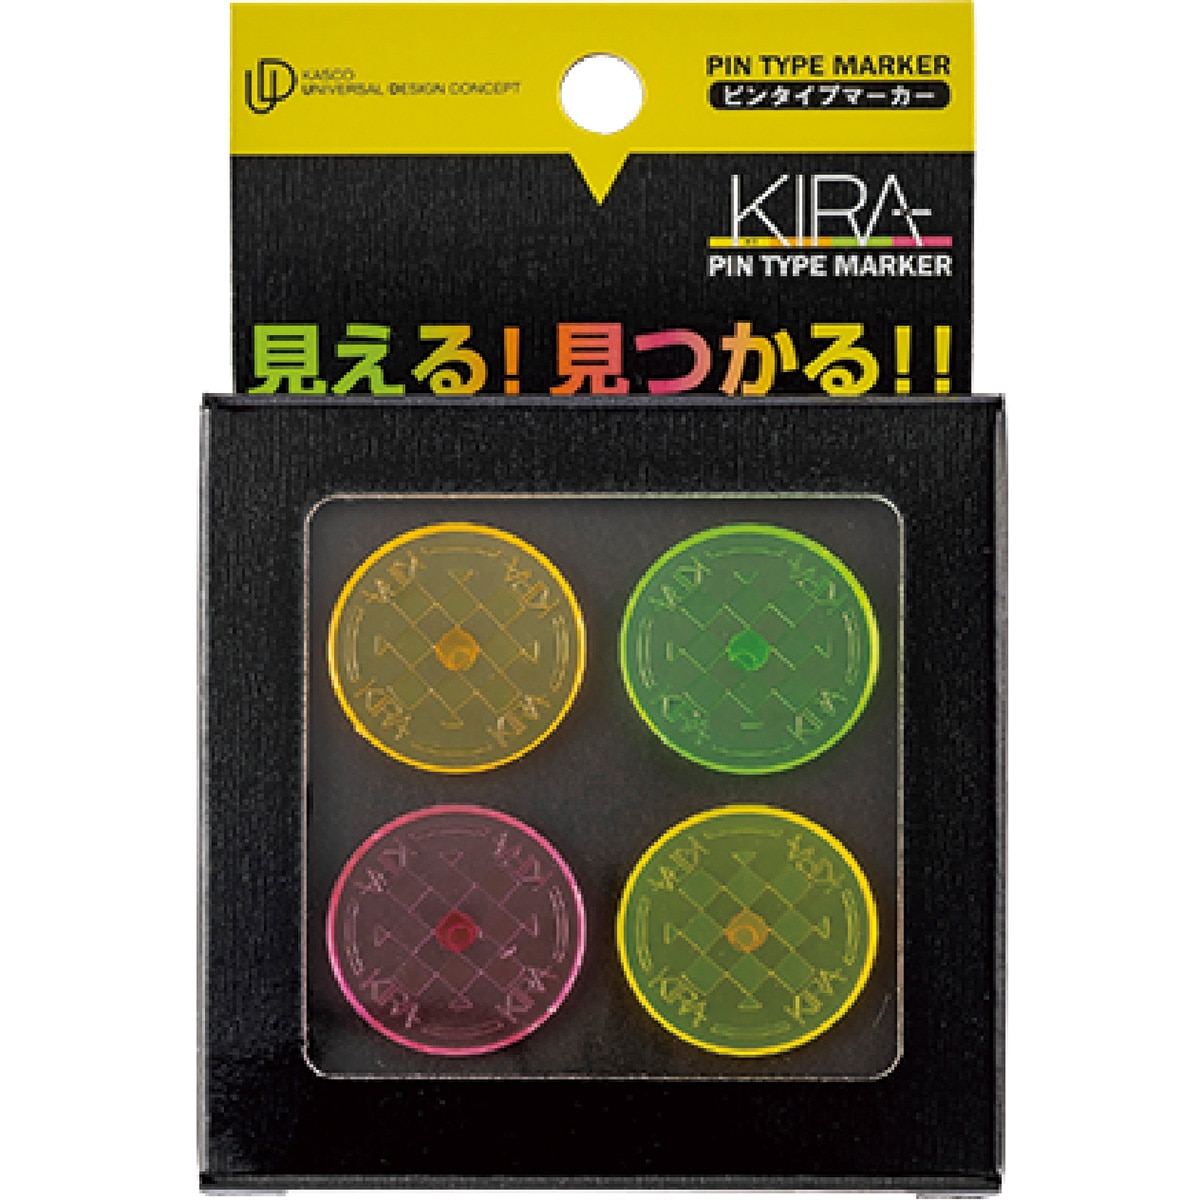 KIRA ピンタイプマーカー 4個セット(マーカー)|KIRA(キャスコ) KIPM